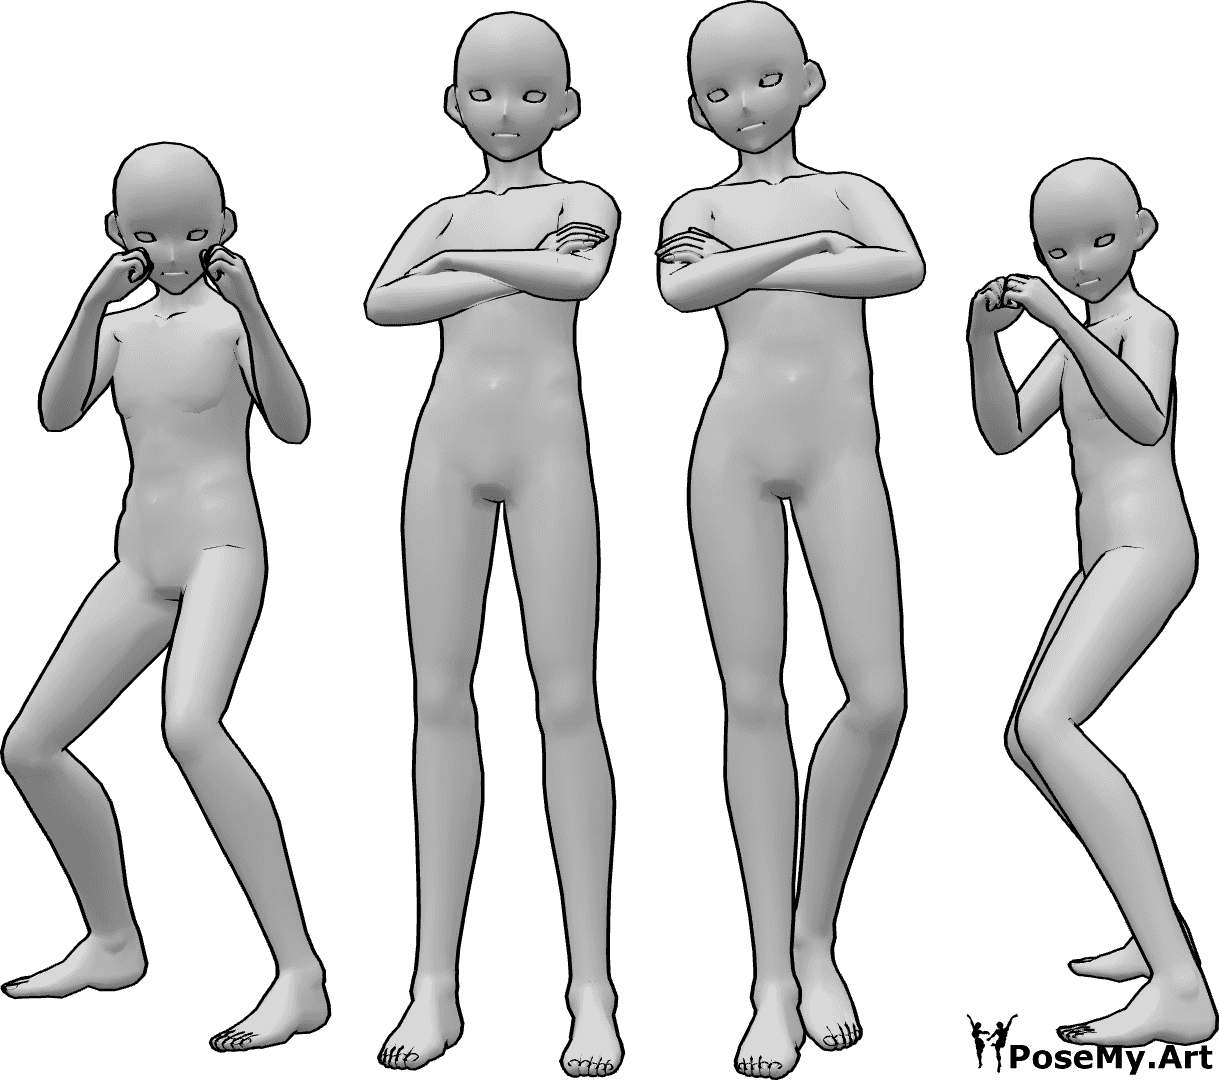 Referencia de poses- Peleadores masculinos de anime posan - Cuatro luchadores masculinos de anime posan, dos de ellos en posición de boxeo y los otros dos de pie con los brazos cruzados.